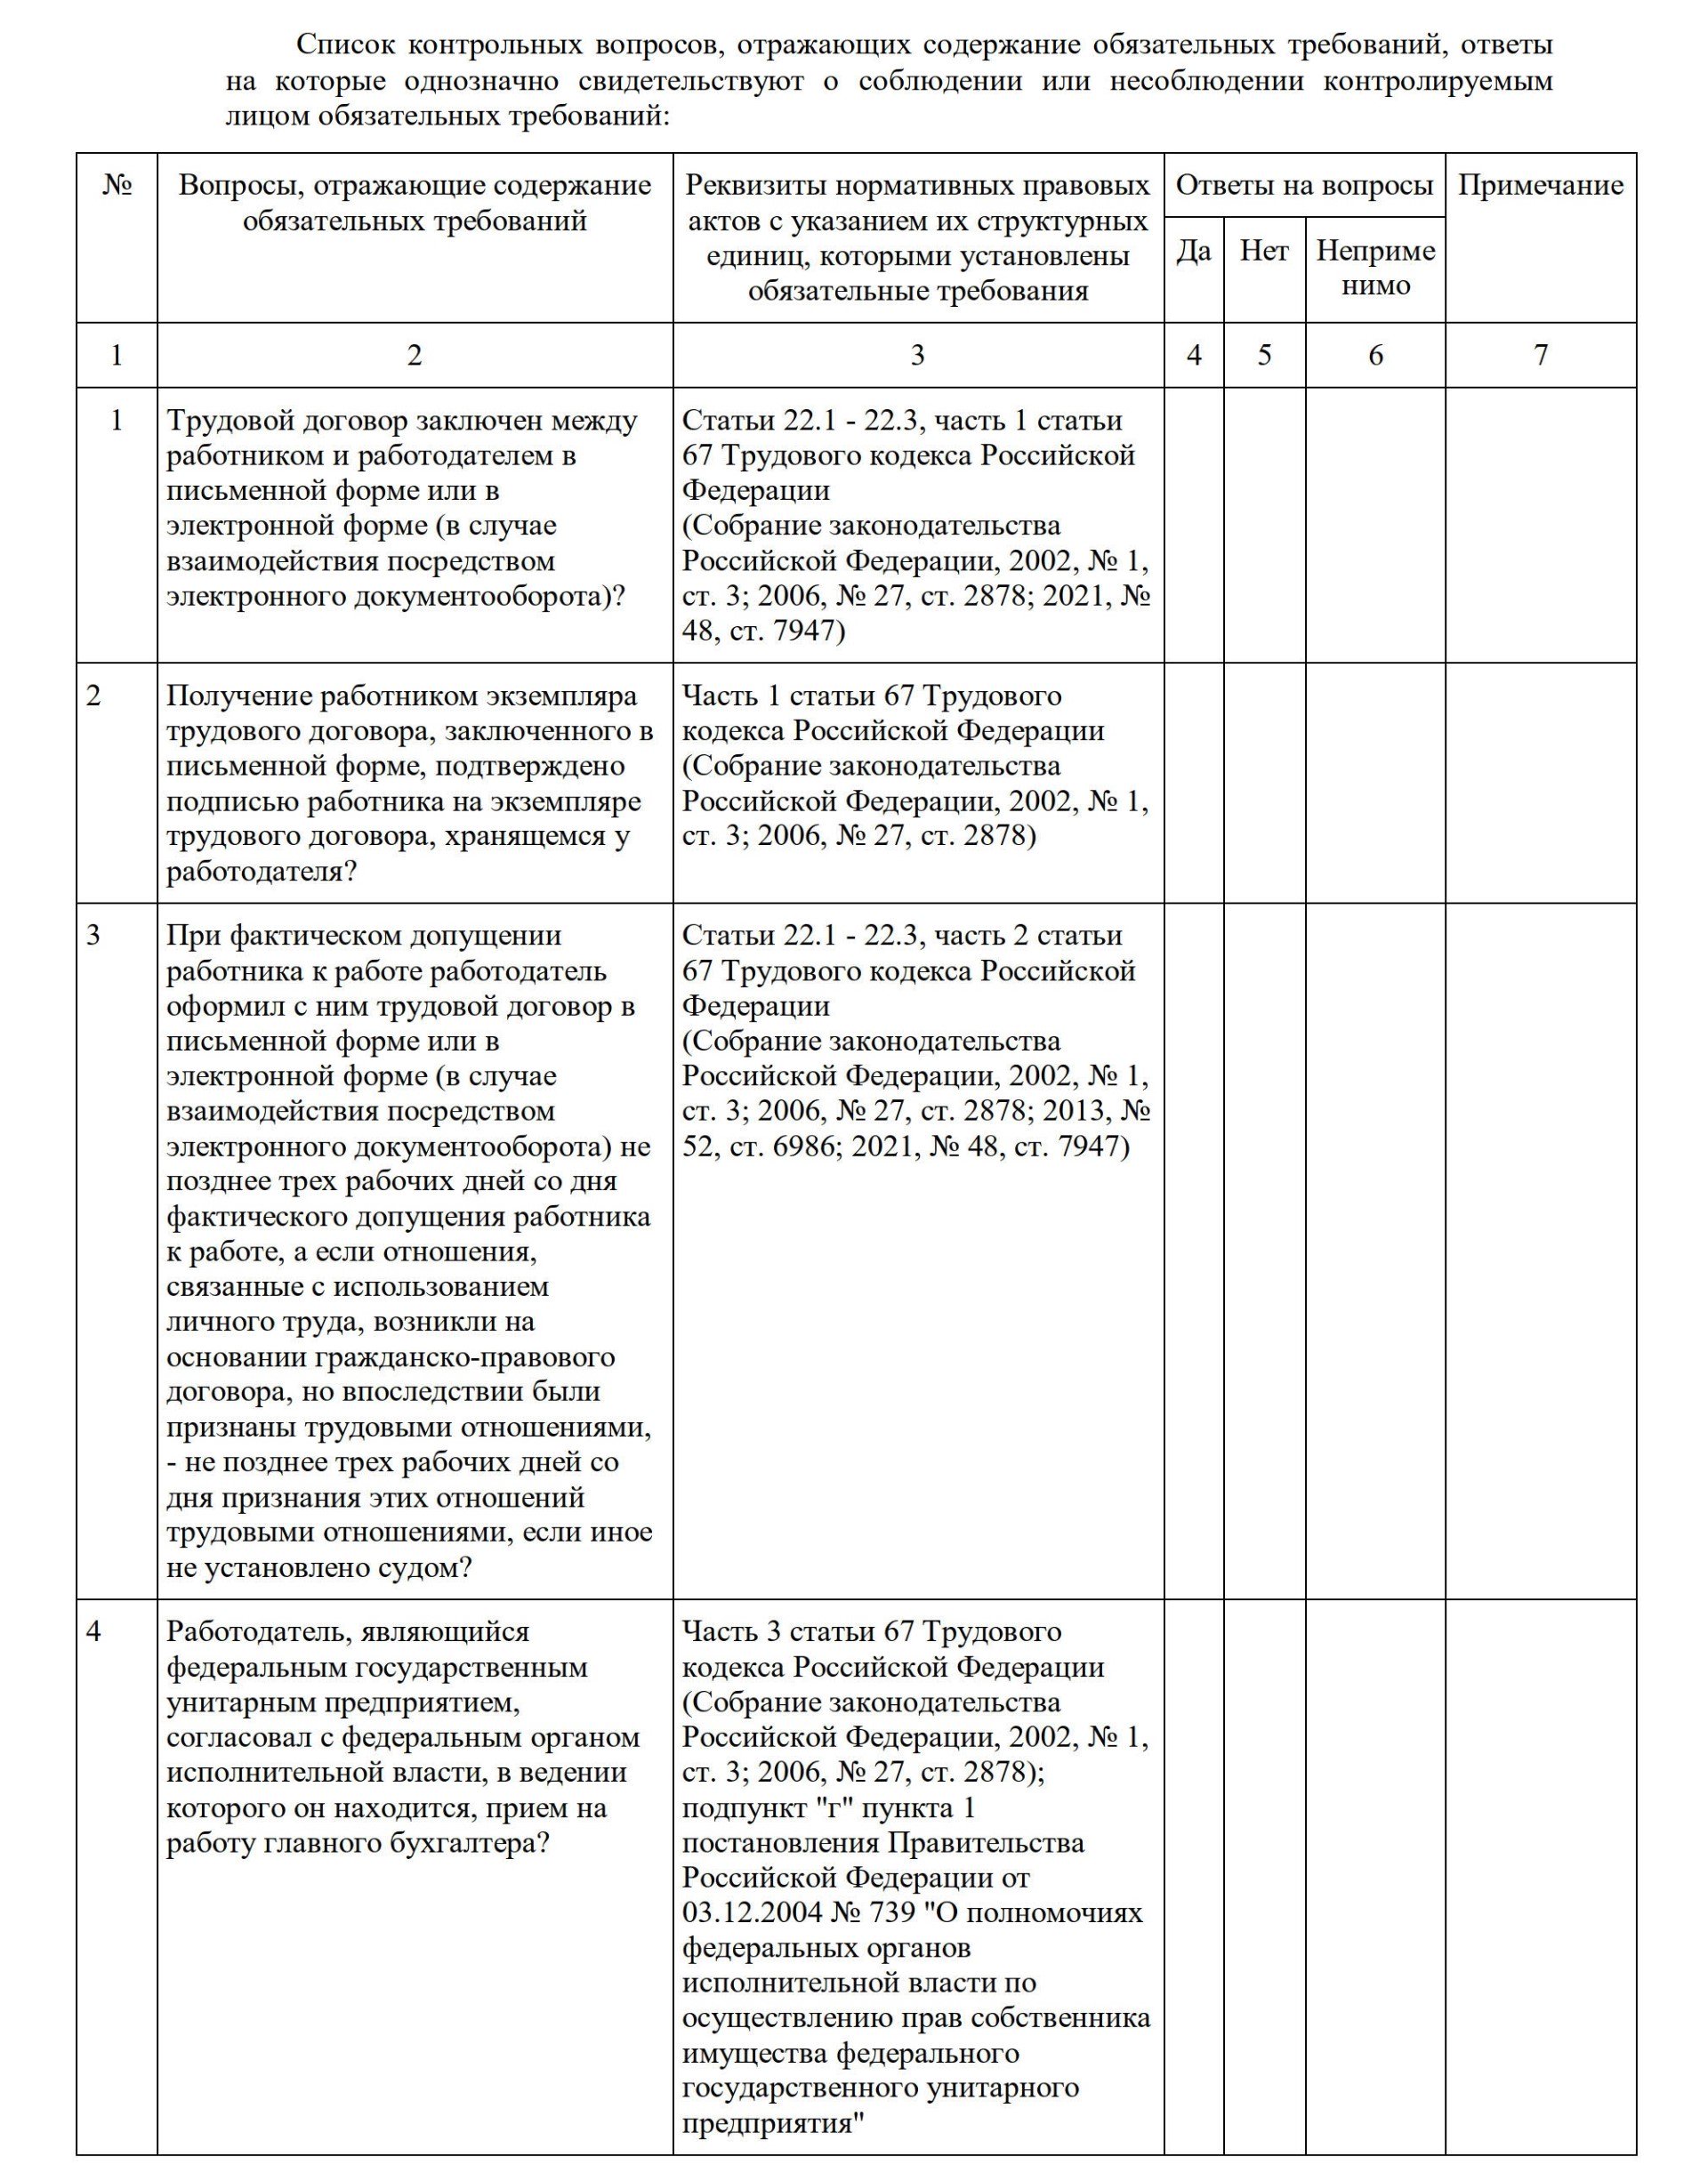 Пример, как выглядит проверочный лист ГИТ об оформлении приема на работу